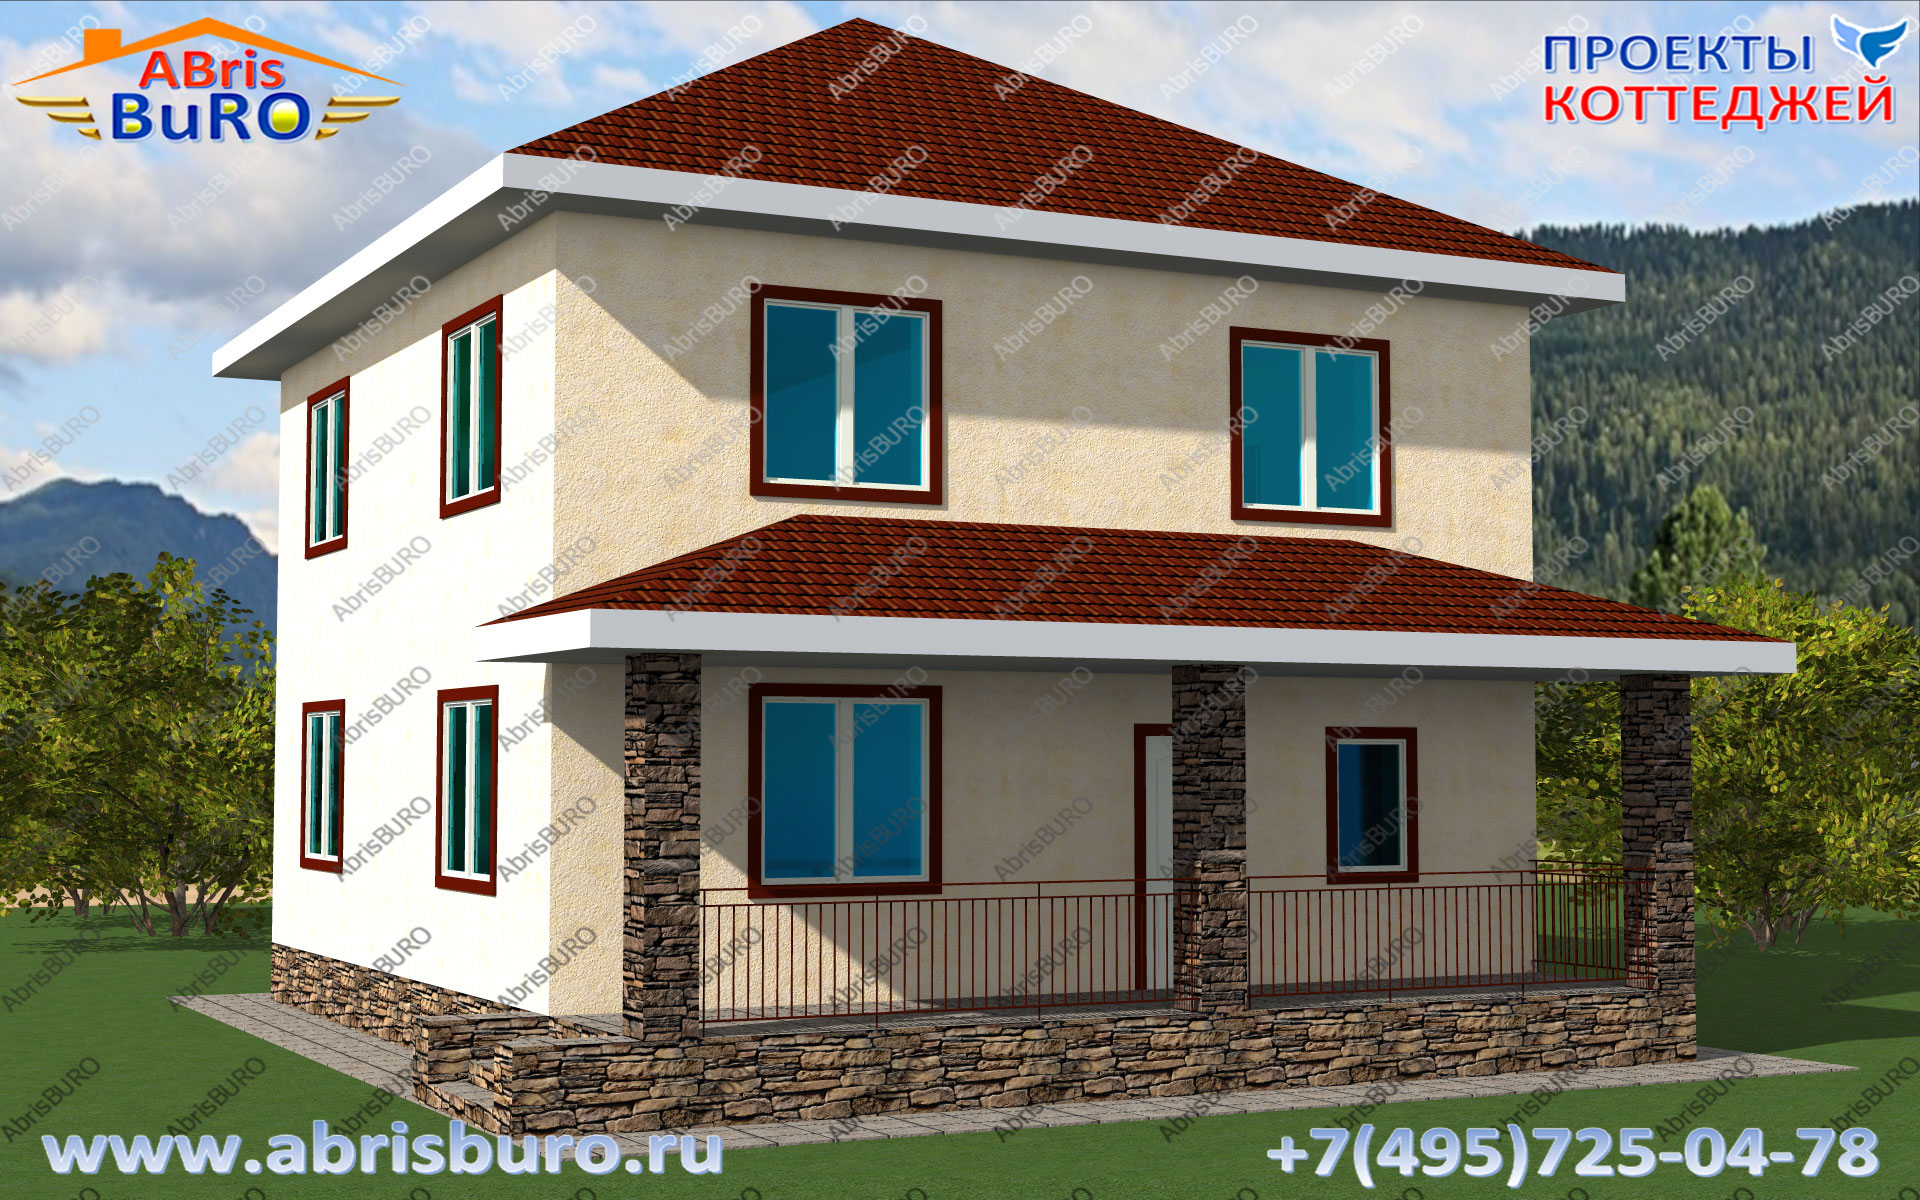 Проект двухэтажного дома с крыльцом K1190-124 на сайте www.abrisburo.ru. 